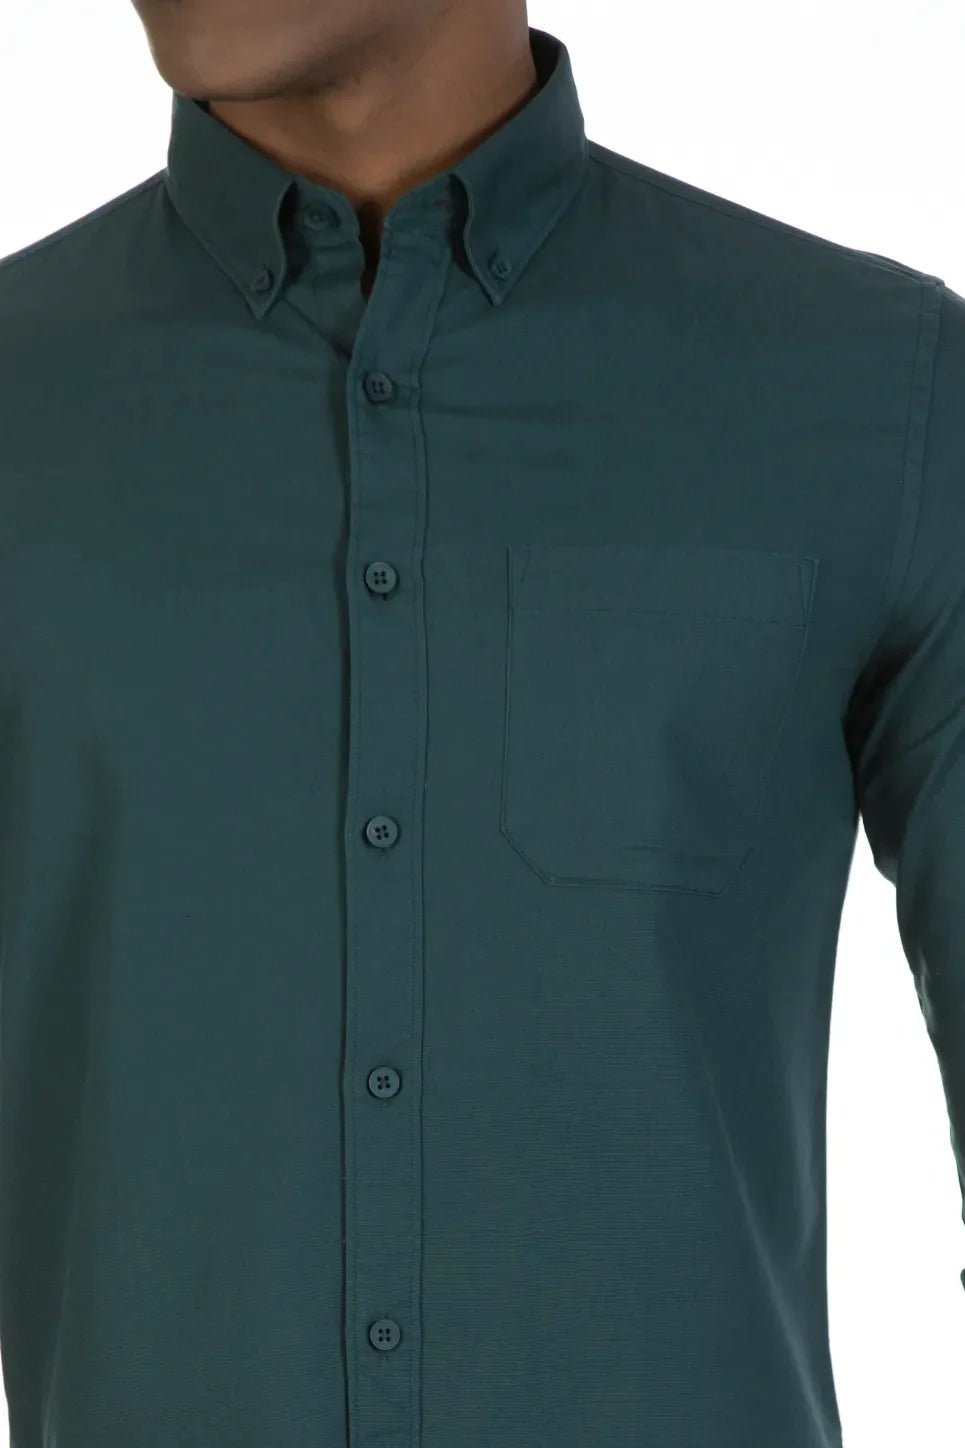 Buy Smart Solid Single Pocket Oxford Shirt Online.